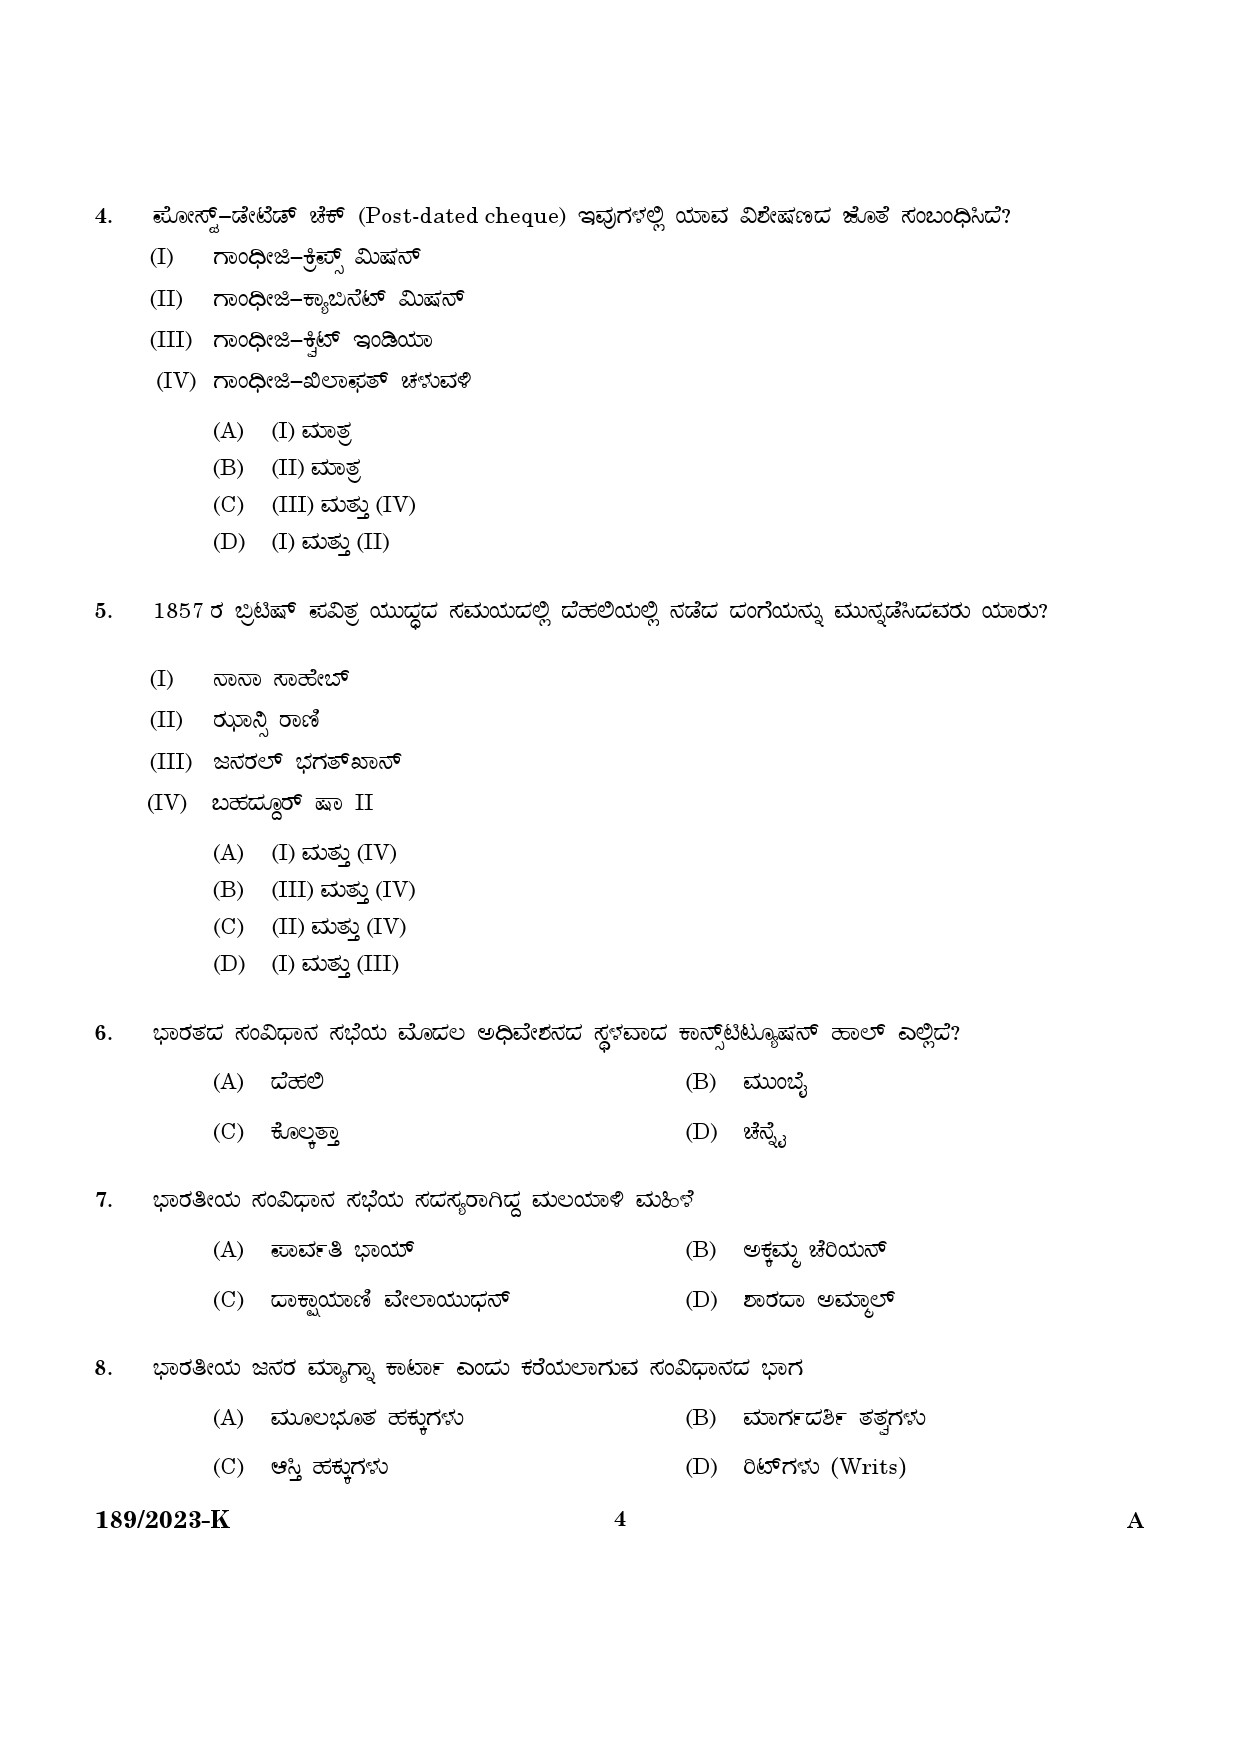 KPSC LGS Kannada Exam 2023 Code 1892023 K 2